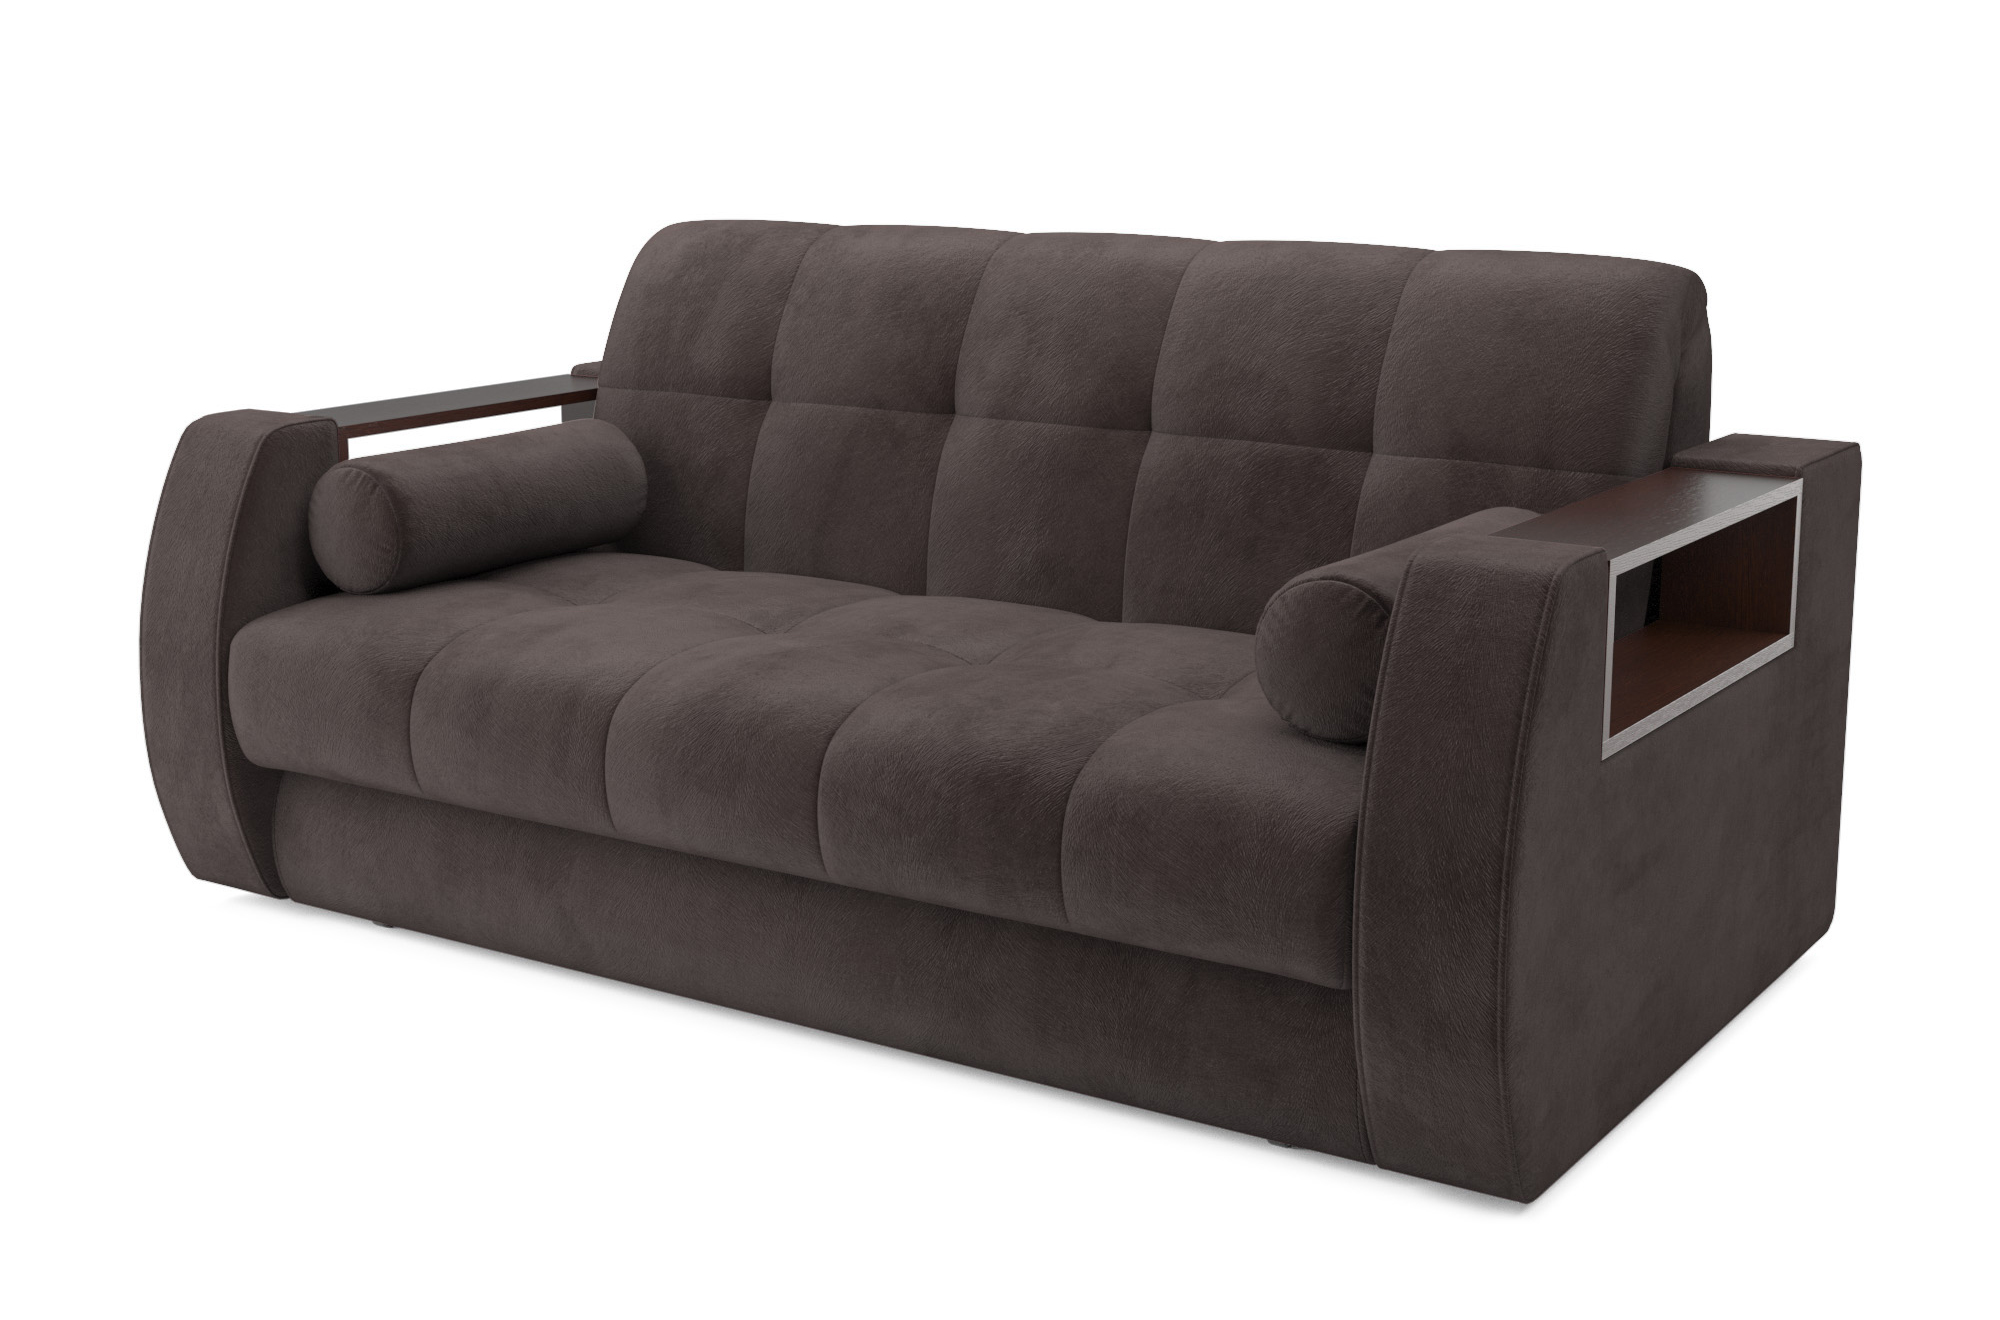 Диван-кровать "Барон №3" кордрой коричневый купить за 36490 руб в Москве - интернет-магазин мебели MnogoMeb.Ru